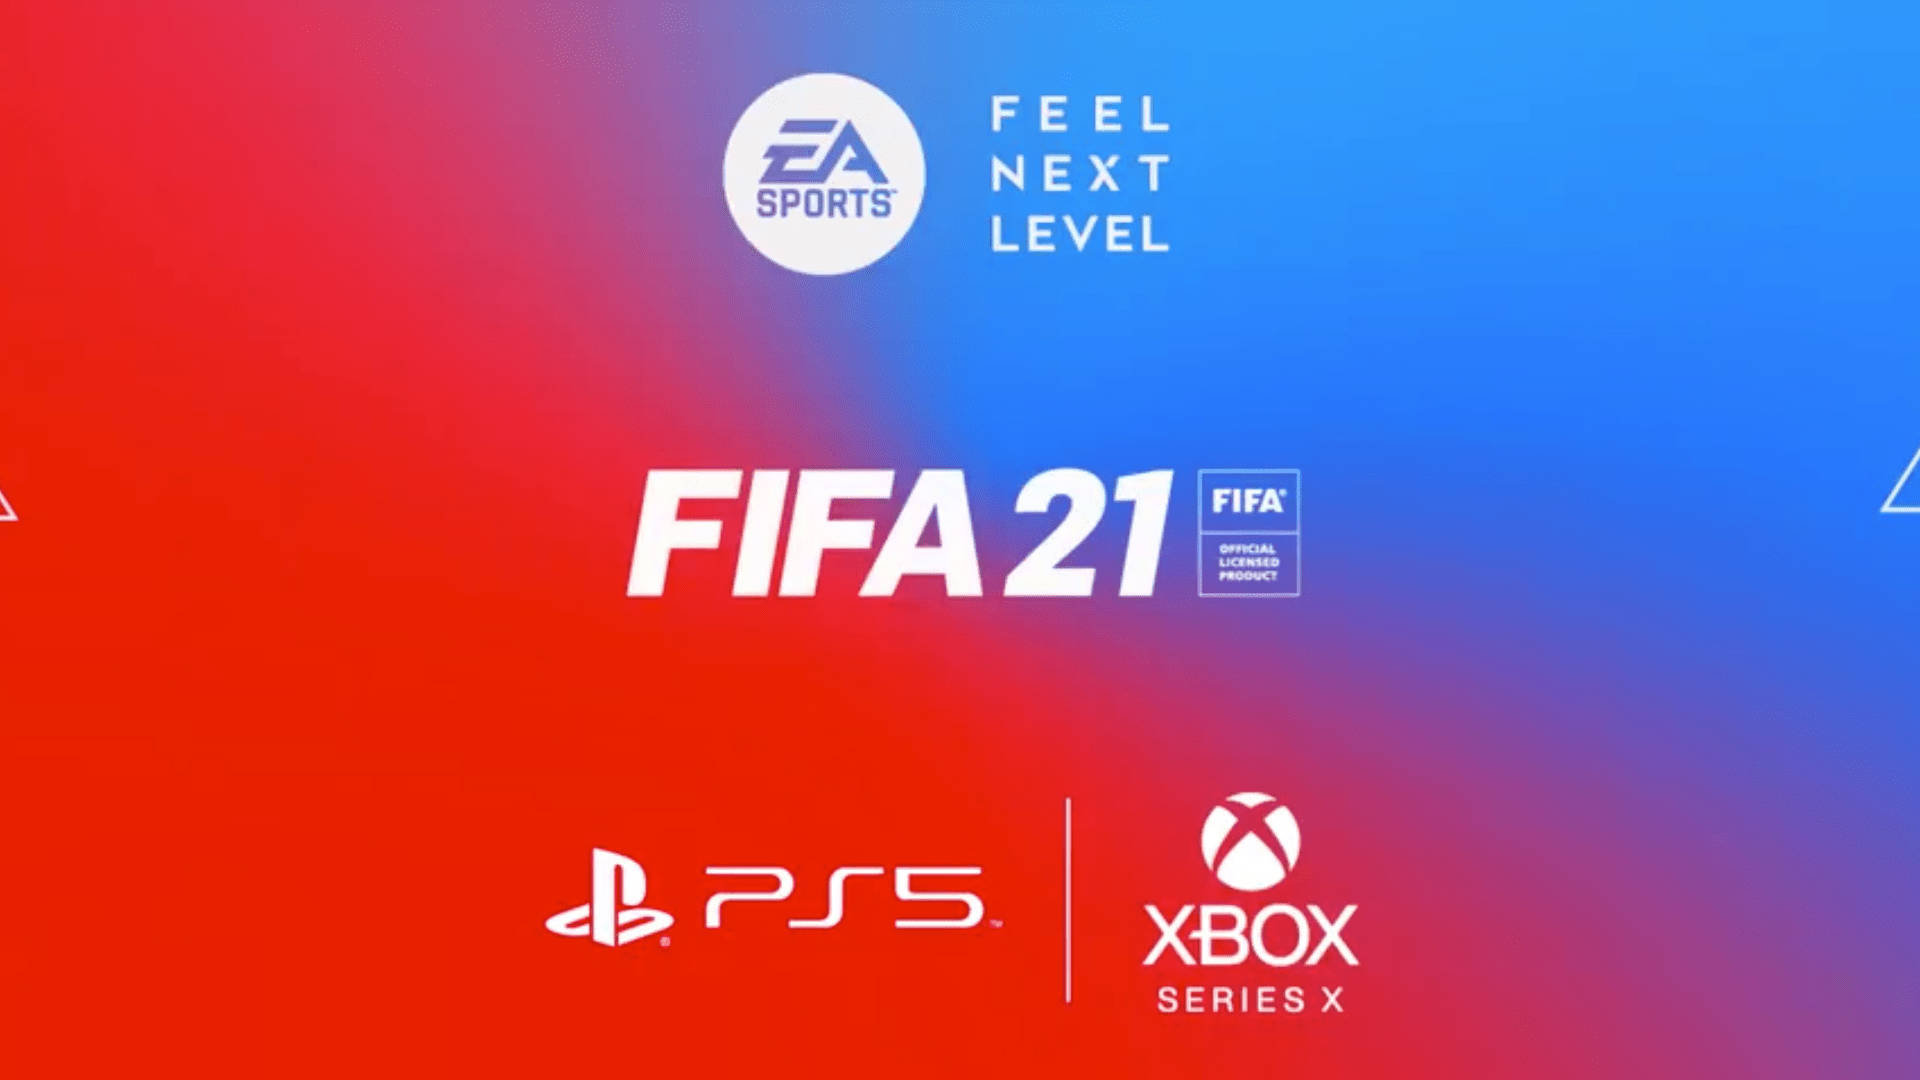 Fifa21 Ea Sports Till Ps5 Och Xbox. Wallpaper